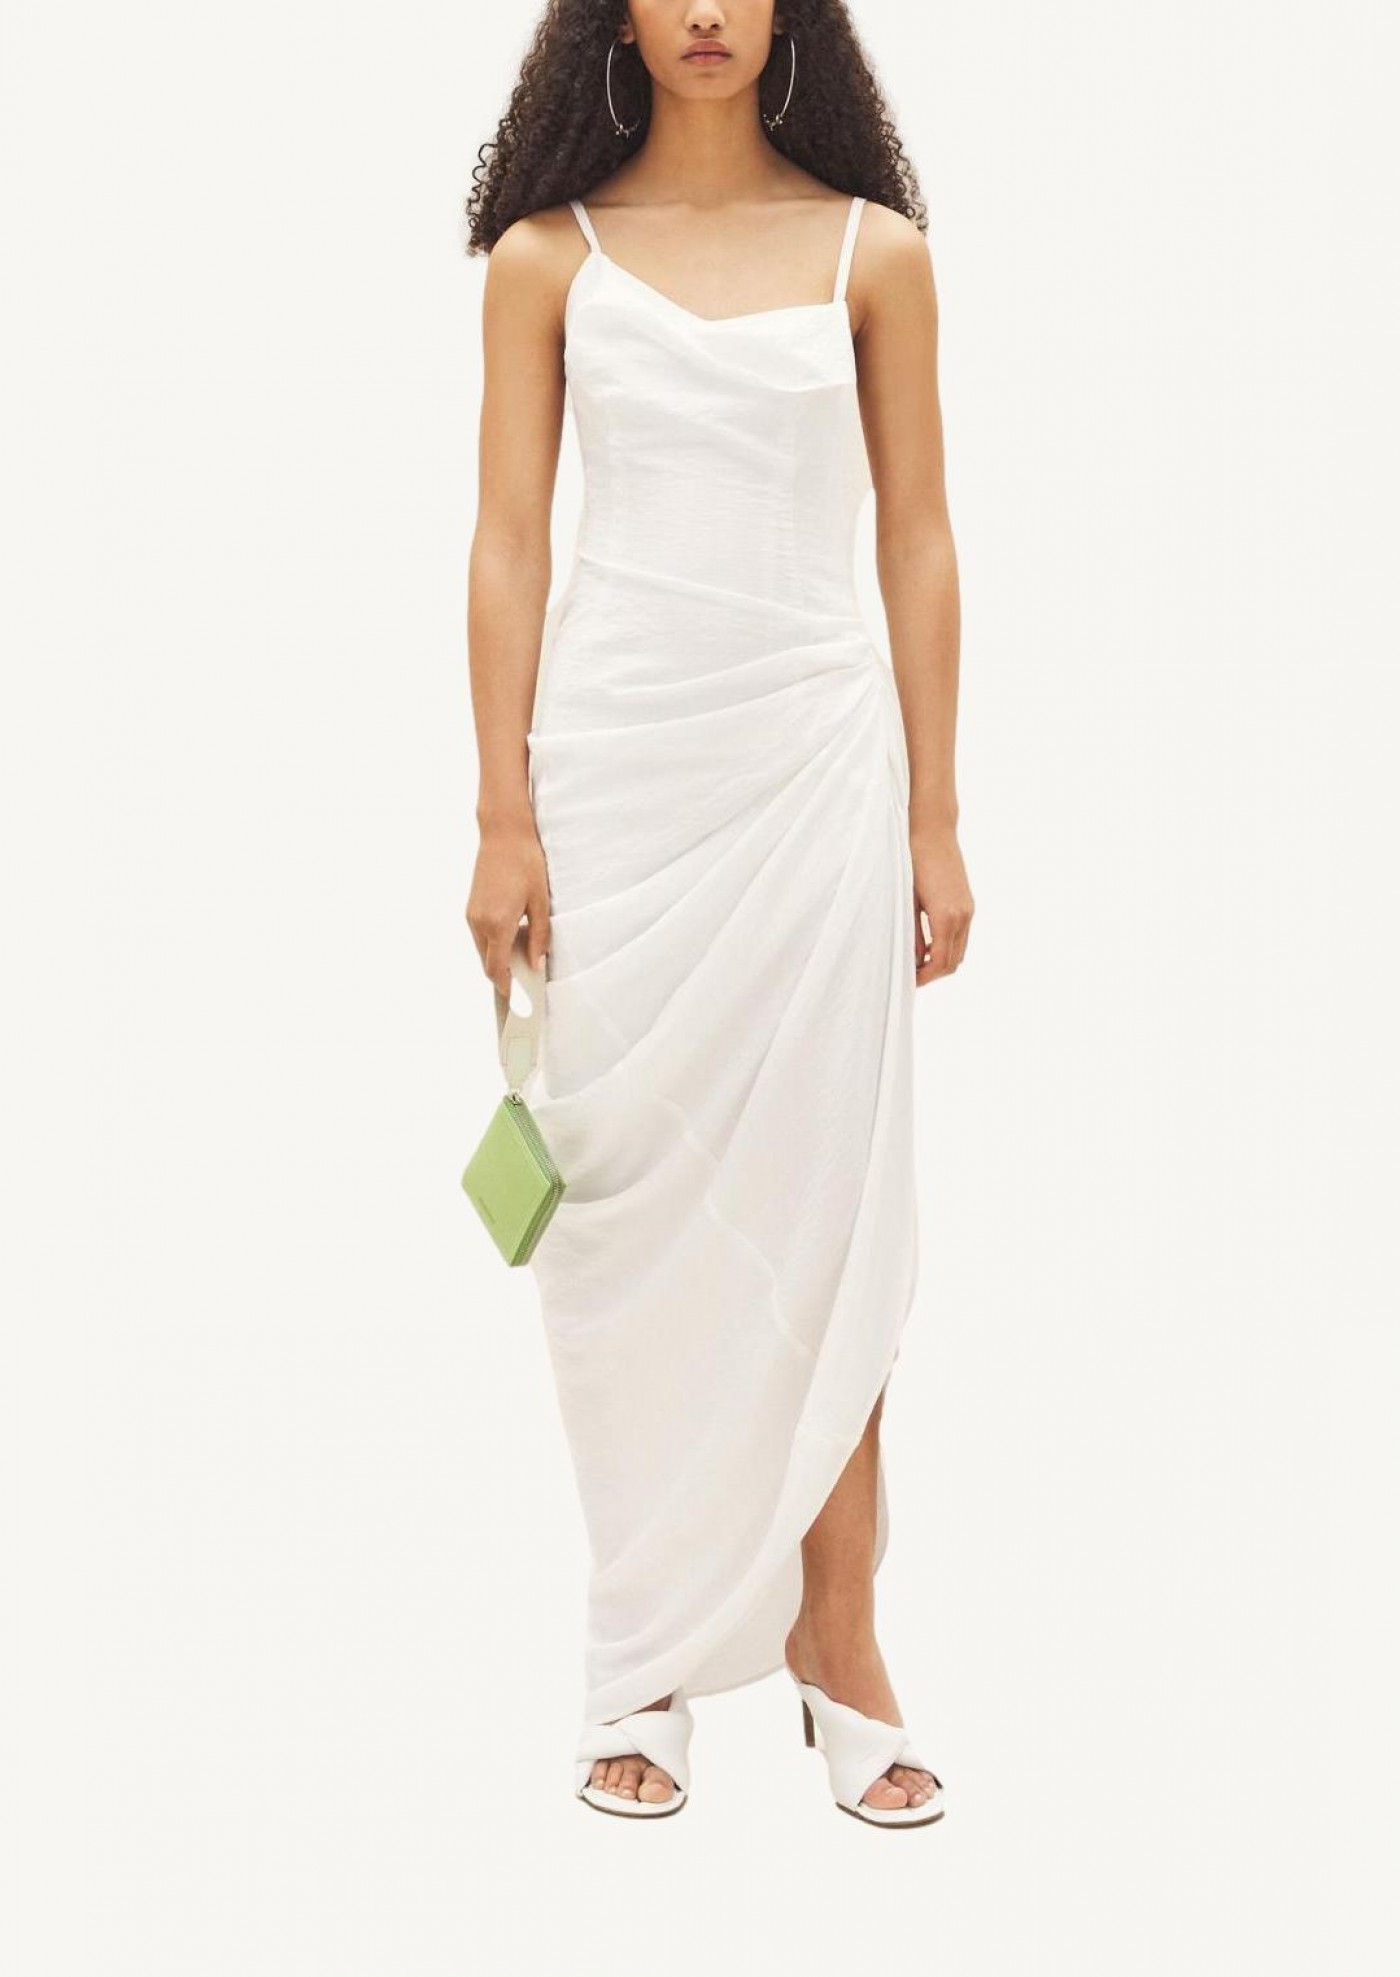 The long white Saudade dress